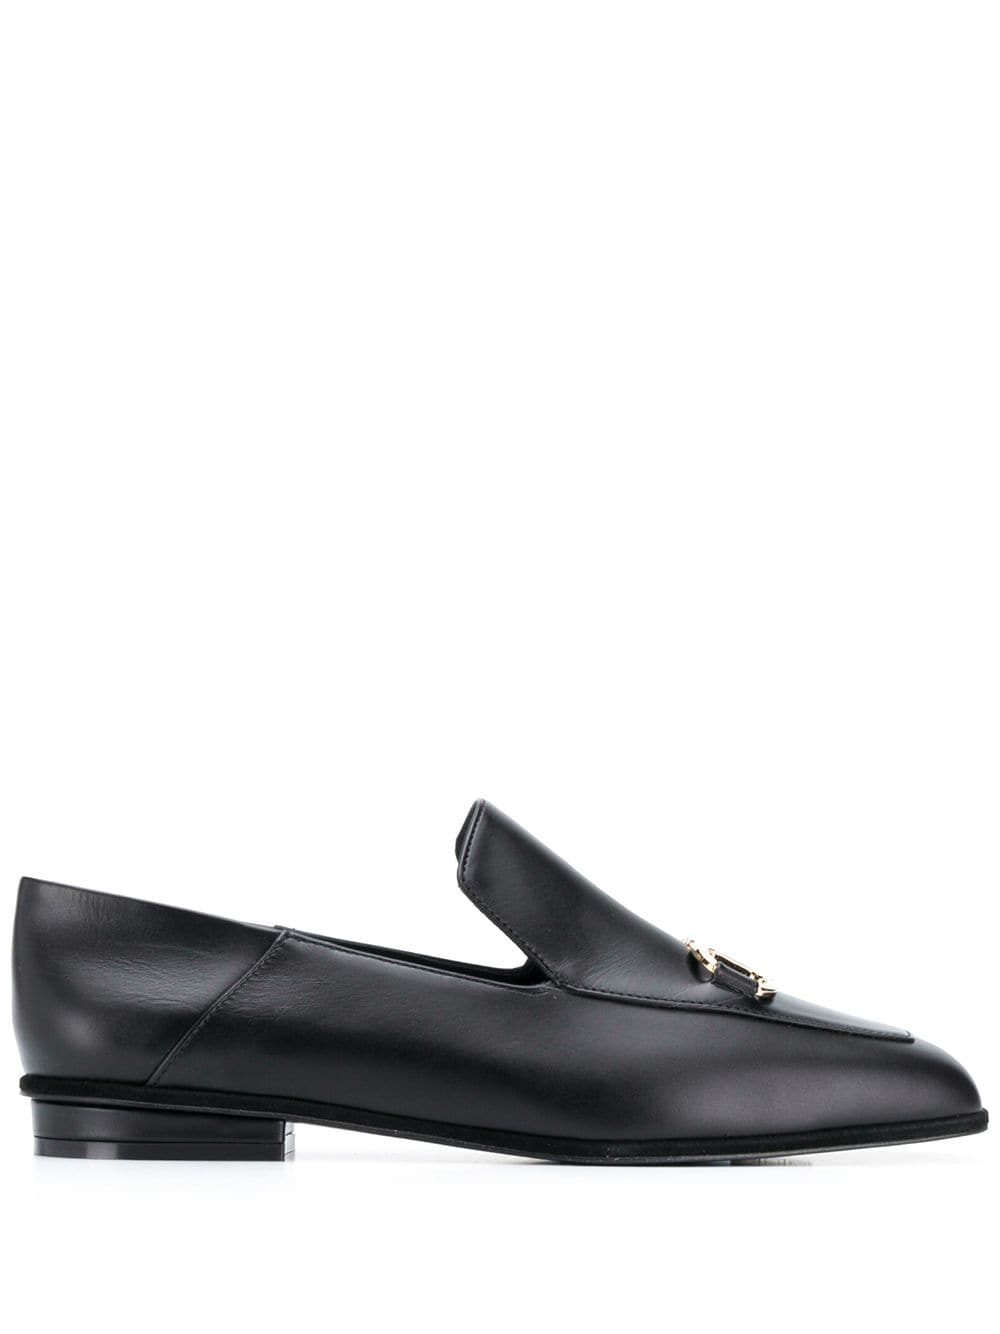 Ferragamo square-toe leather loafers - Black